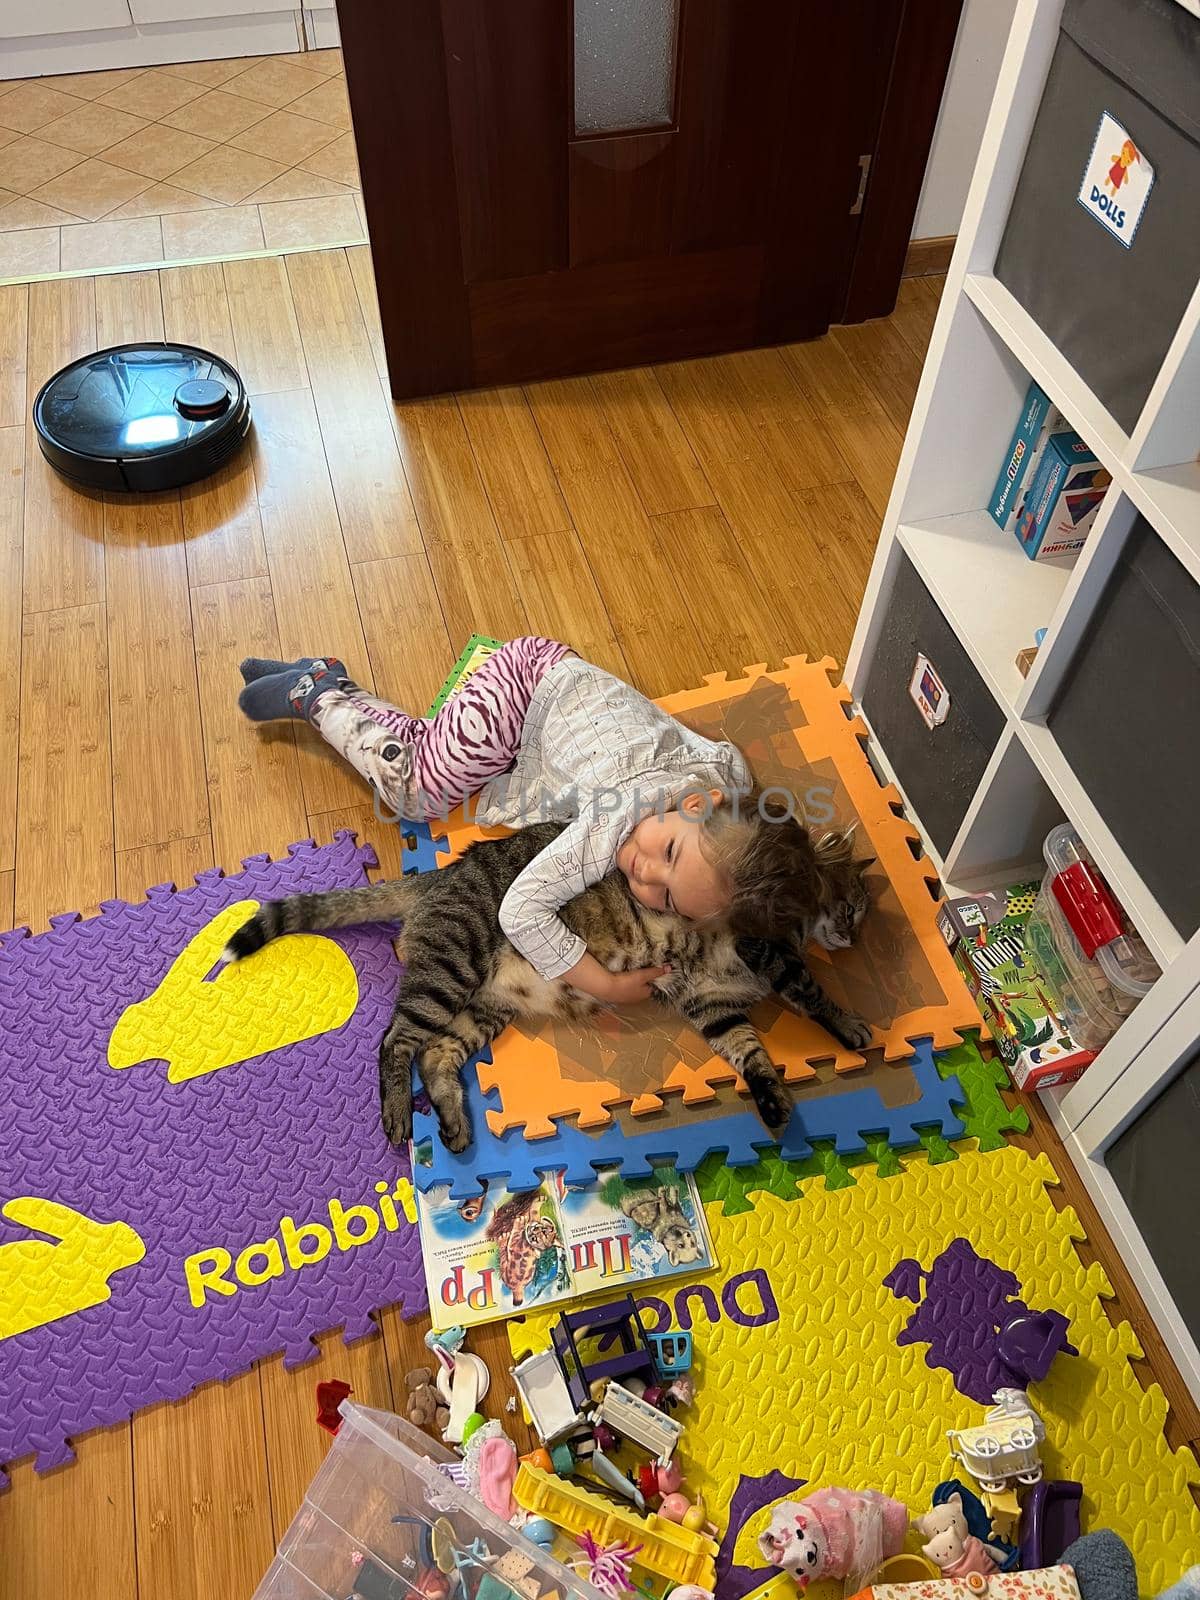 Little girl lies hugging a cat on a play mat. High quality photo